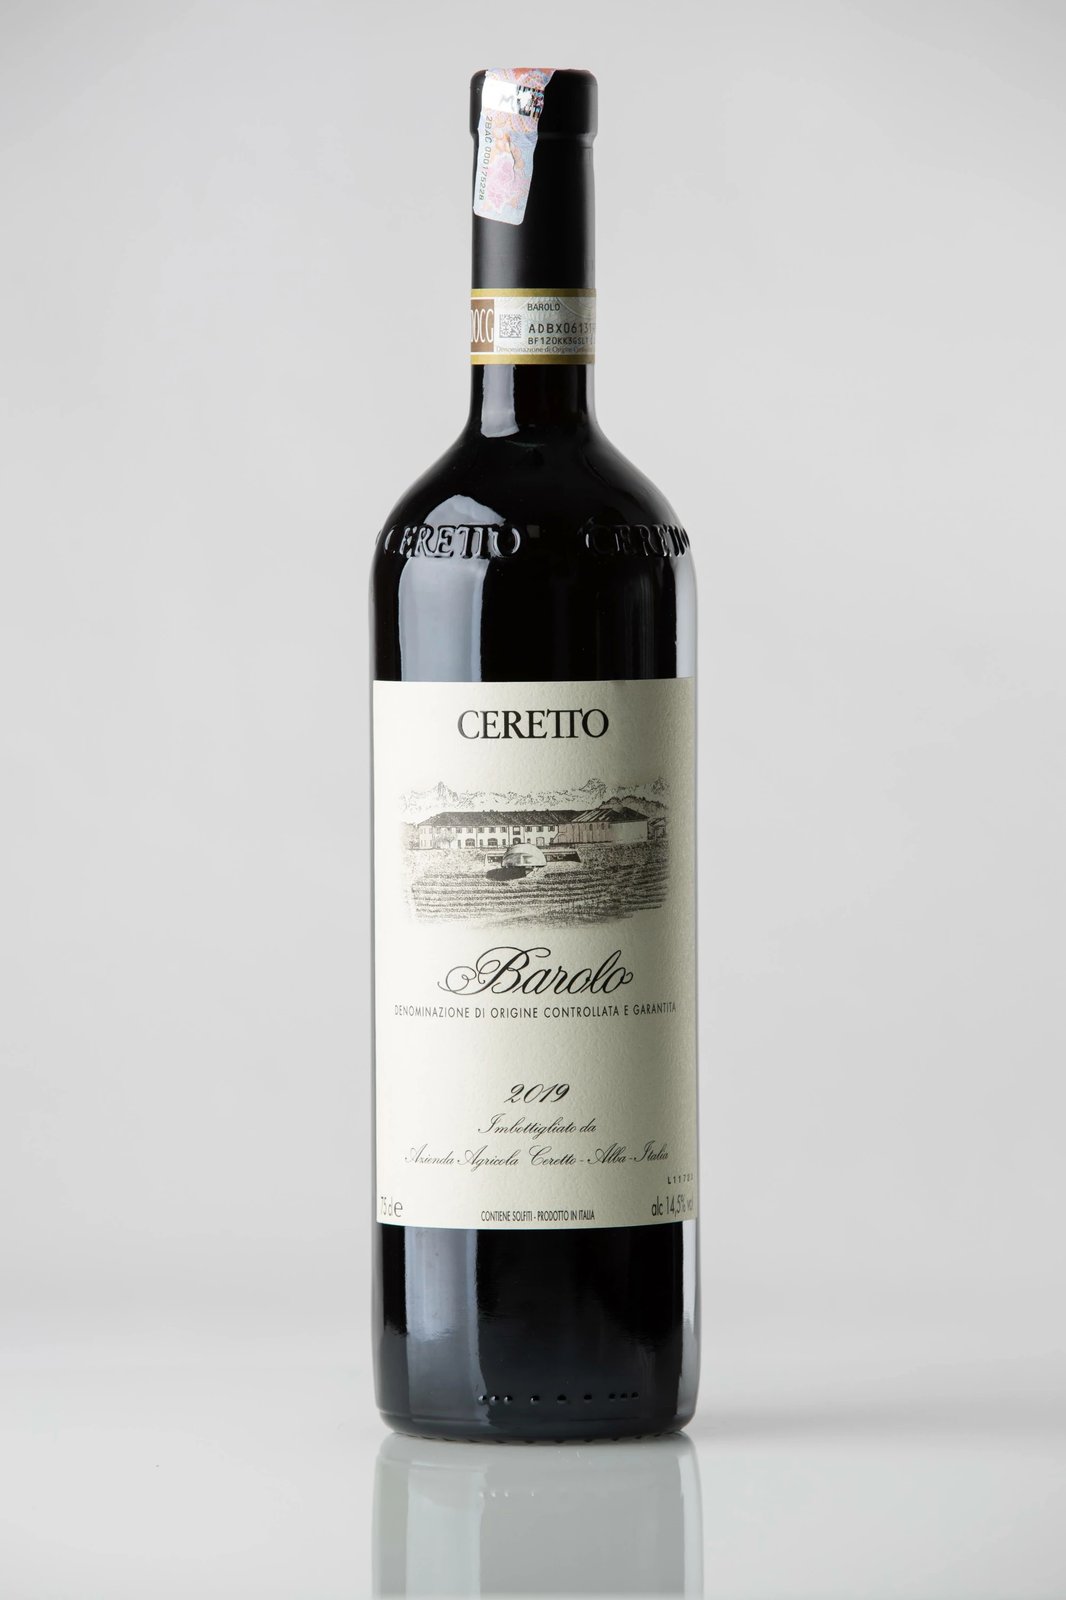 Verë e kuqe, Ceretto Barolo 2019 (Nebbiolo)